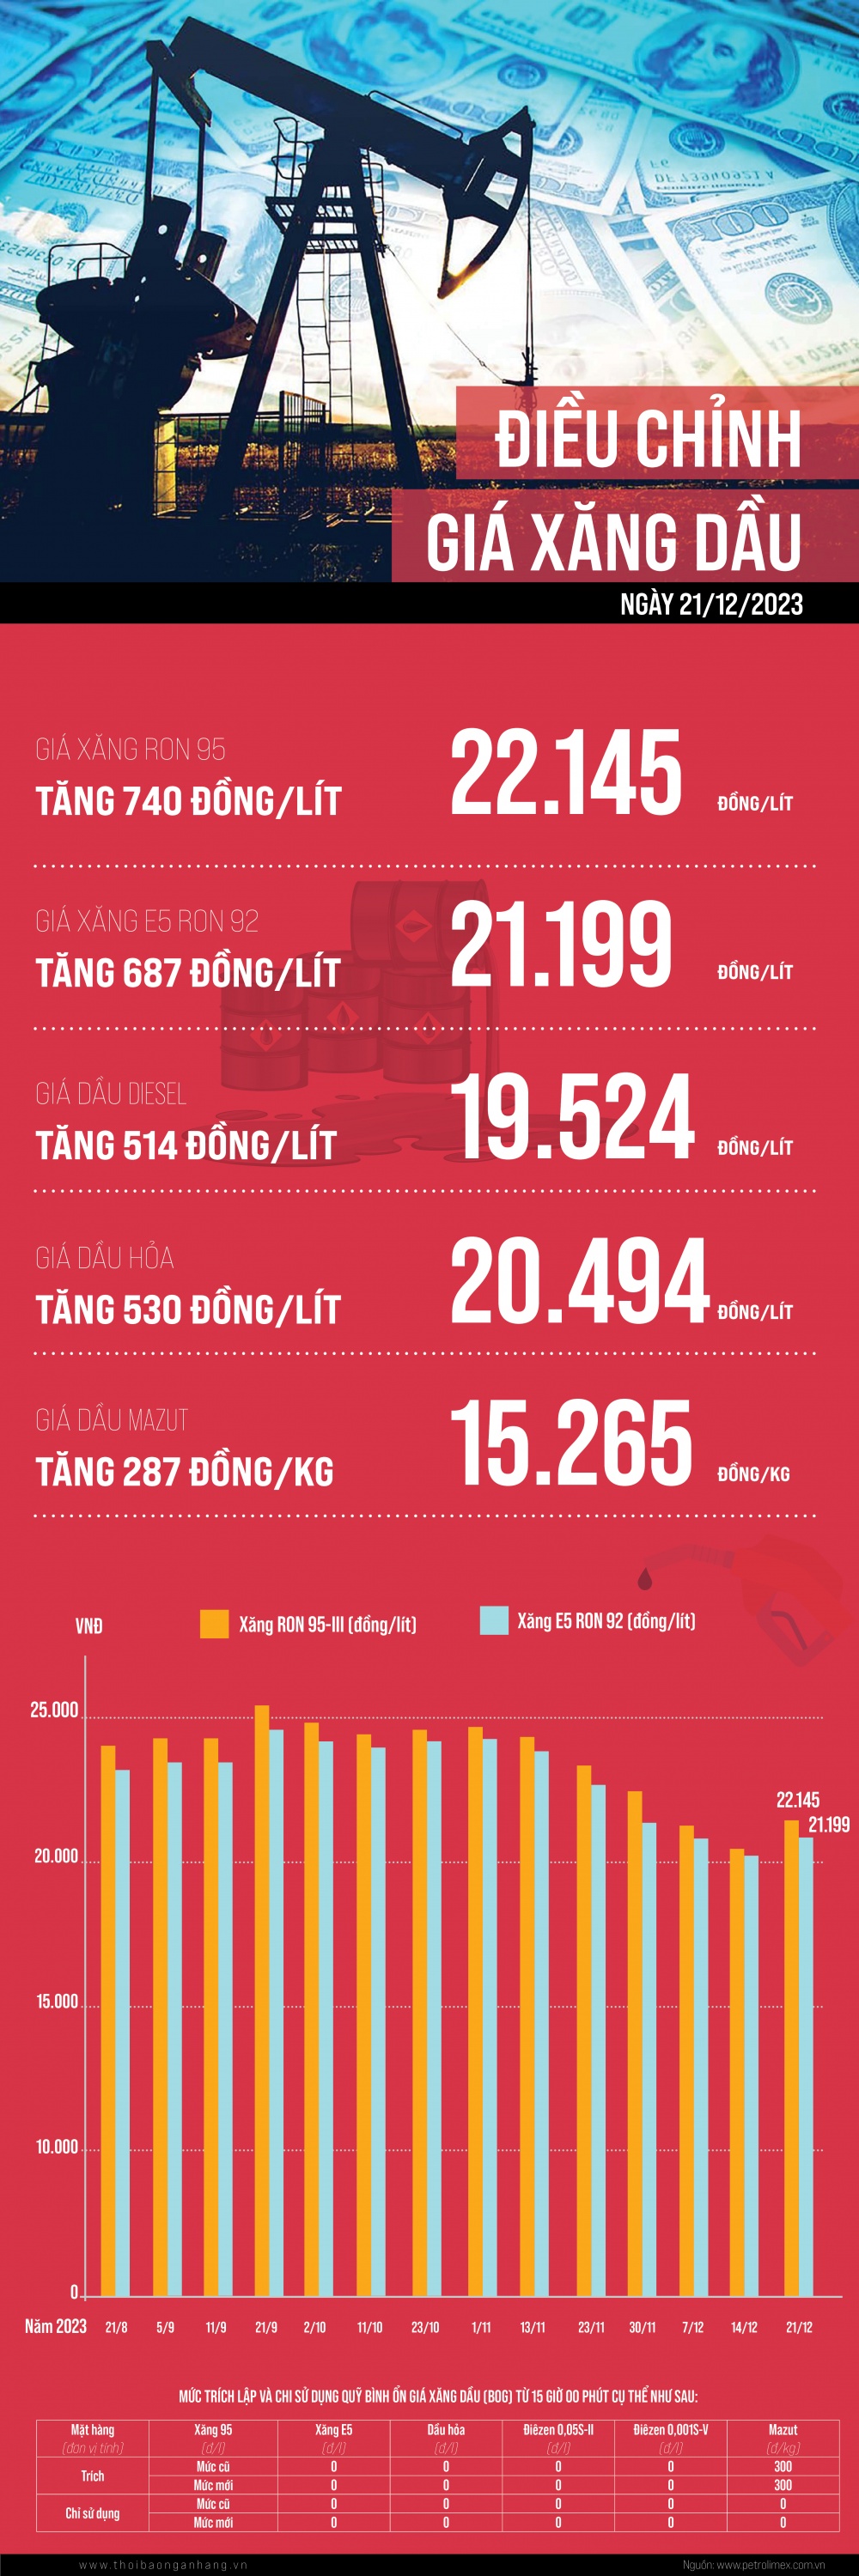 [Infographic] Giá xăng dầu tăng trong phiên điều hành 21/12/2023